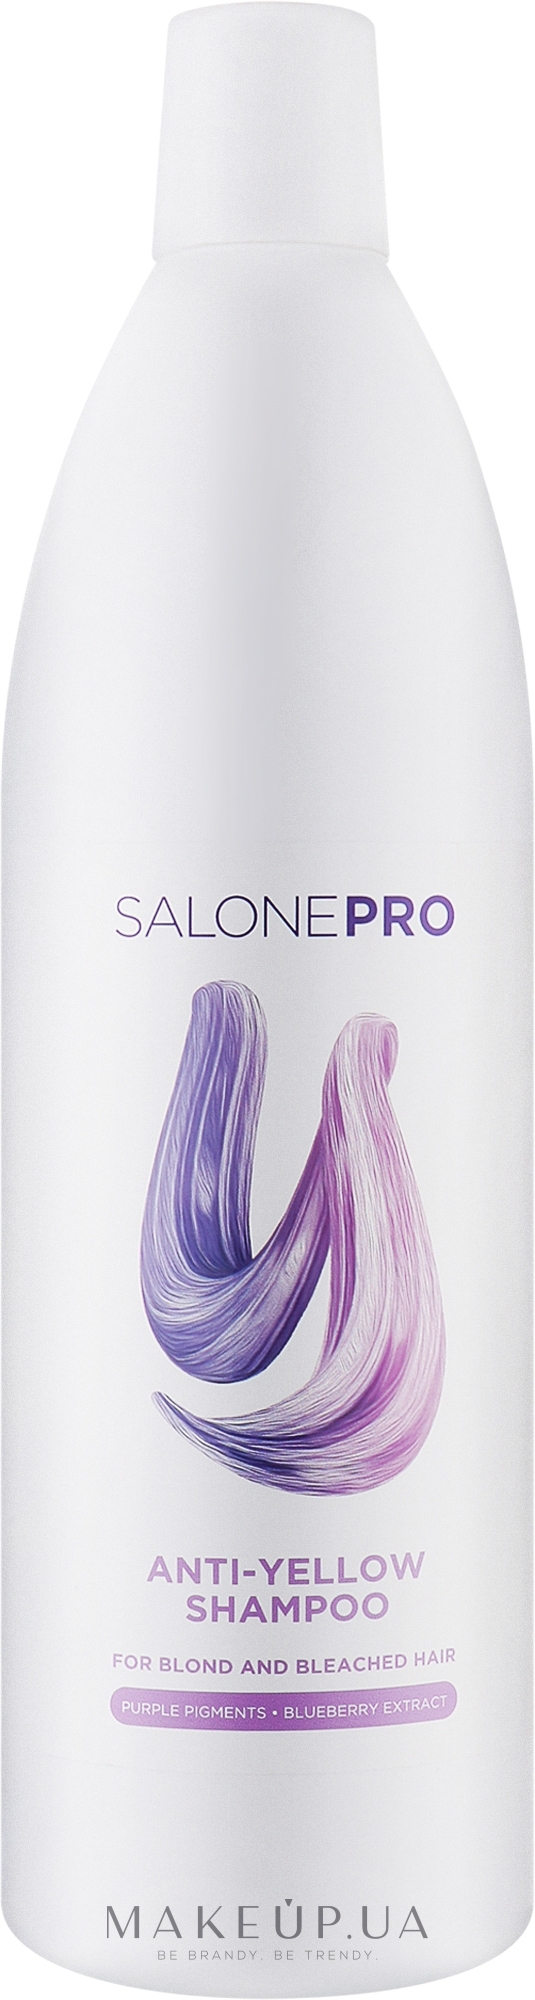 Шампунь проти жовтизни для світлого та освітленого волосся - Unic Salone Pro Shine Anti-& Yellow Shampoo — фото 1000ml